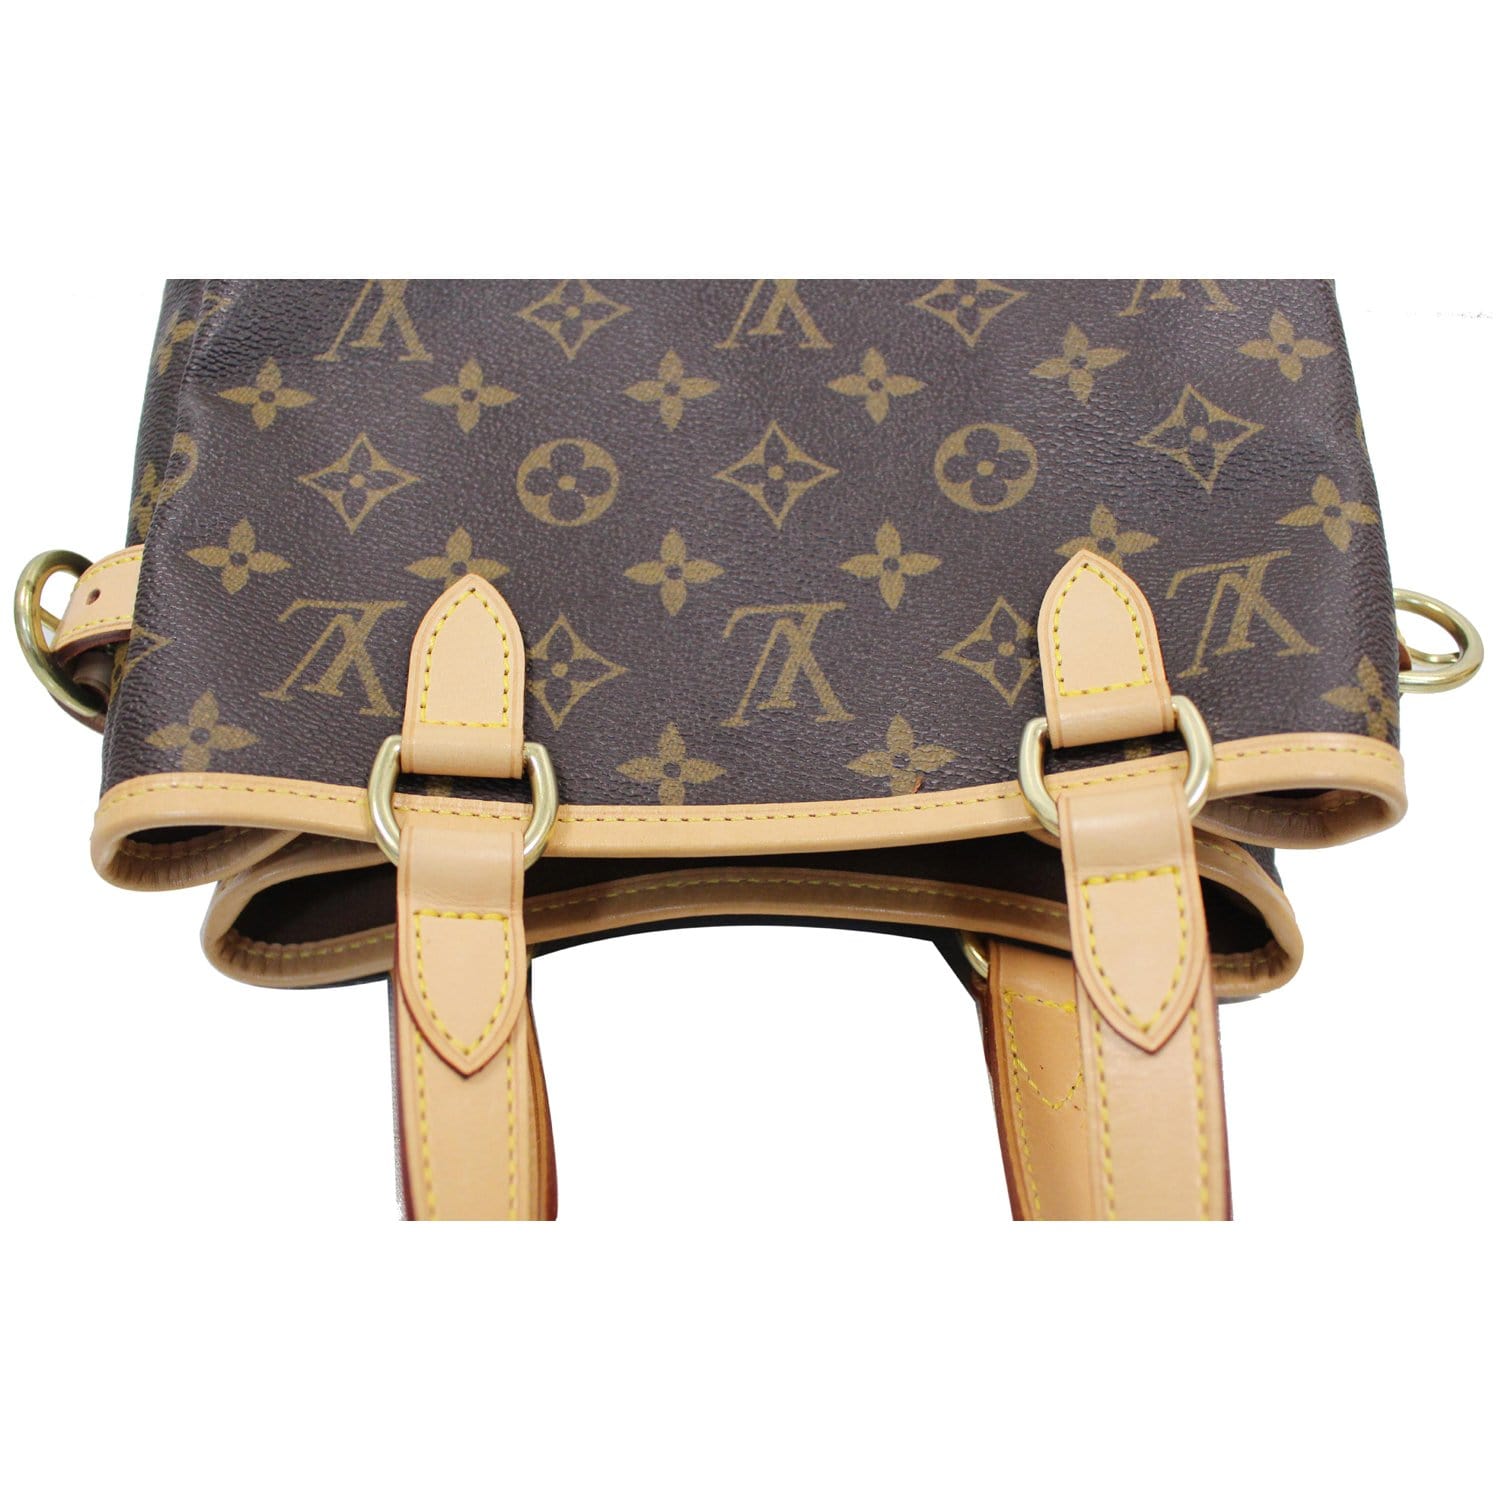 Buy Pre-Owned Authentic Luxury Louis Vuitton Batignolles Vertical Pm  Handbag Online